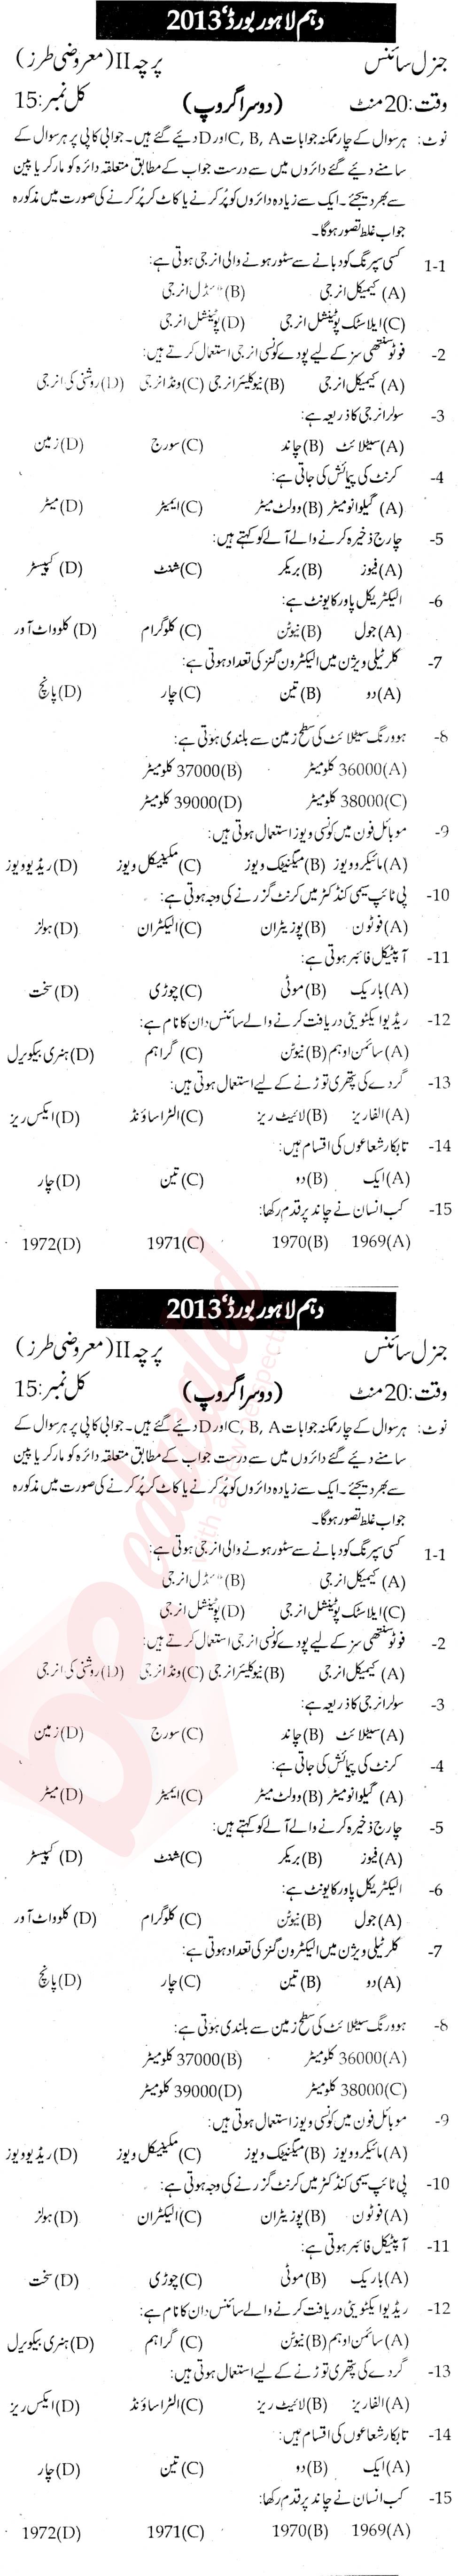 General Science 10th Urdu Medium Past Paper Group 2 BISE Lahore 2013